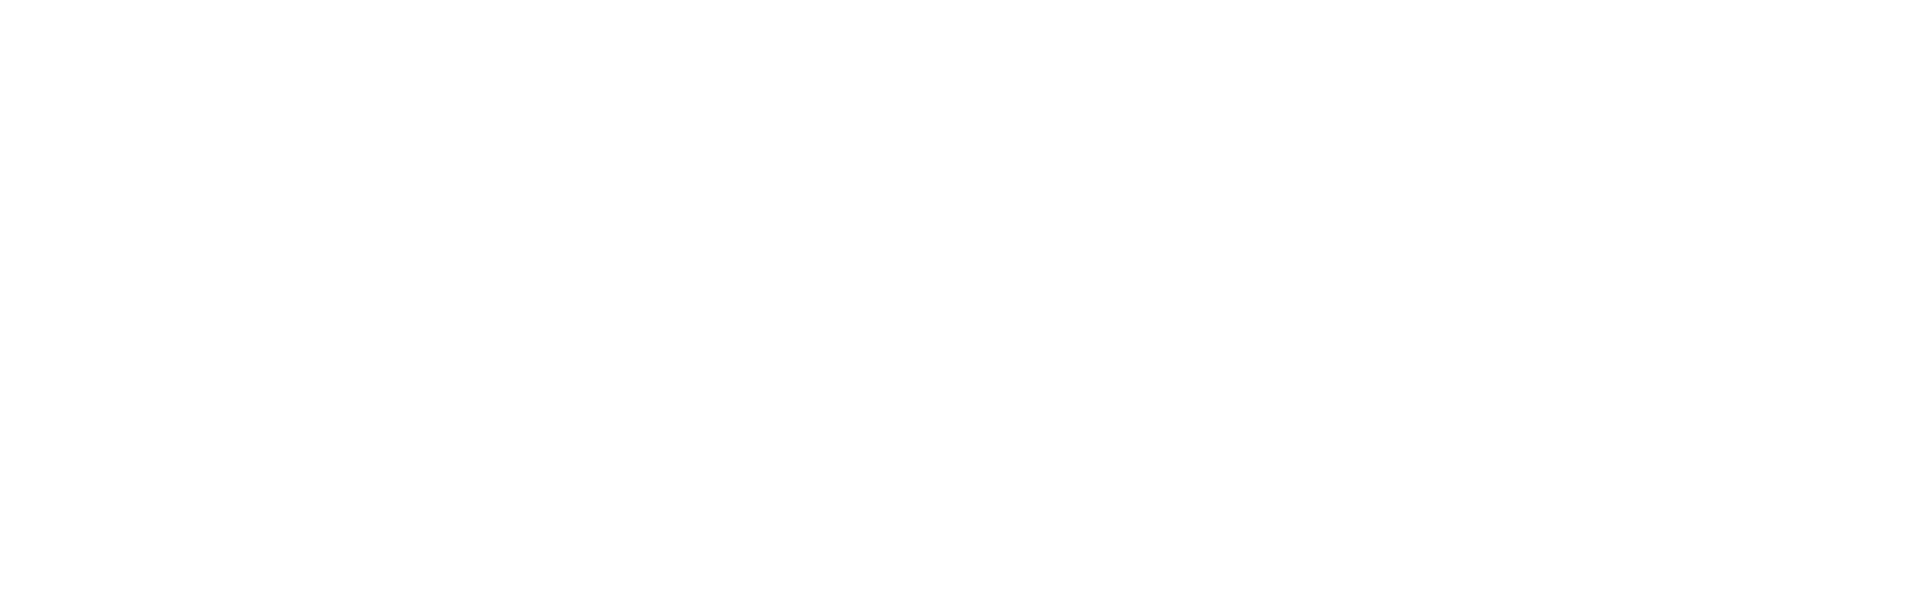 stamper logo